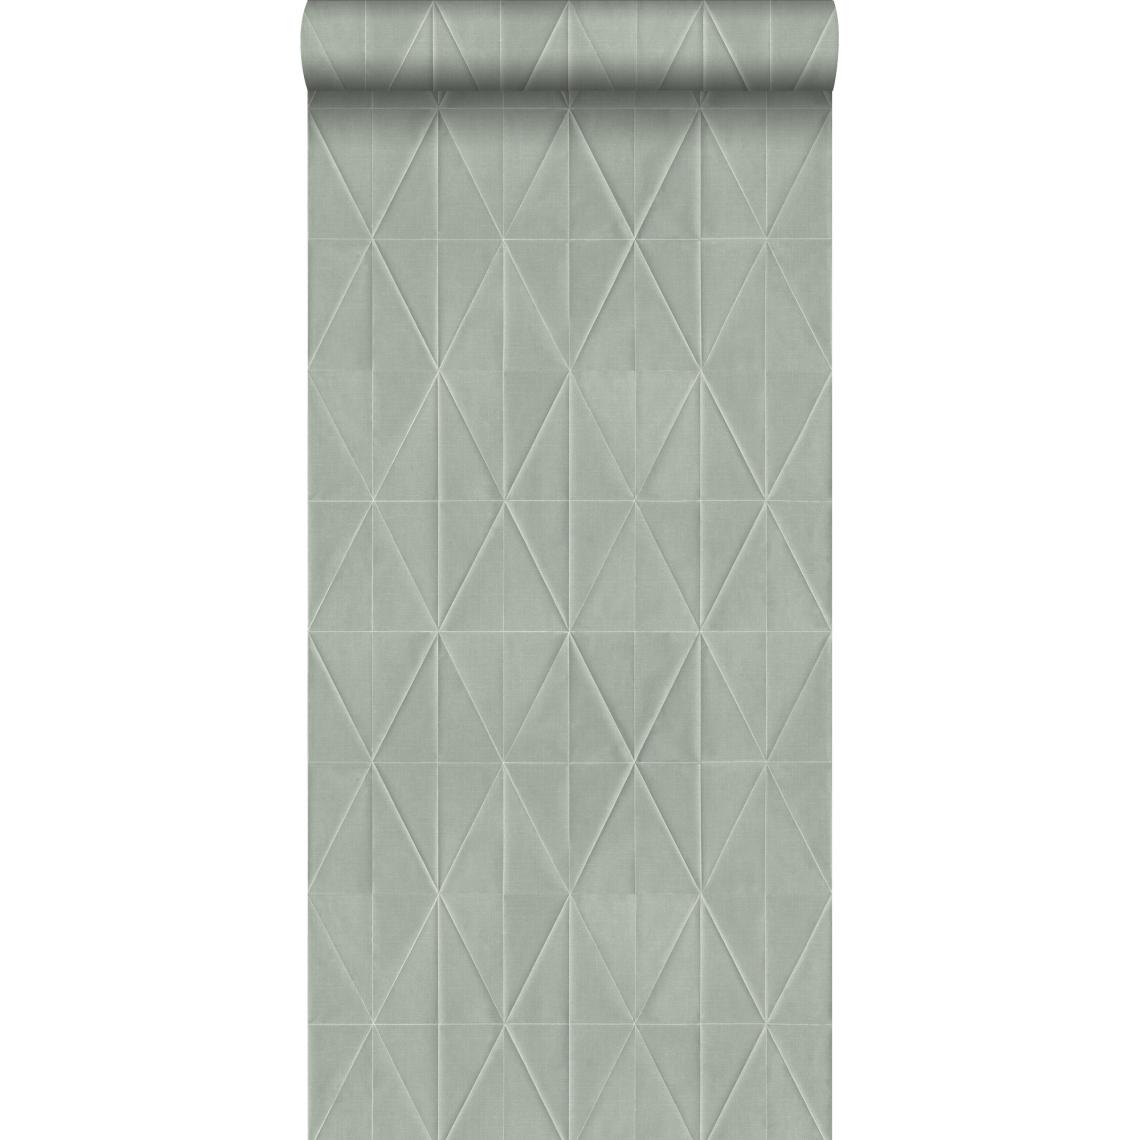 ESTAhome - ESTAhome PP intissé éco texture origami gris clair - 148708 - 0.53 x 10.05 m - Papier peint